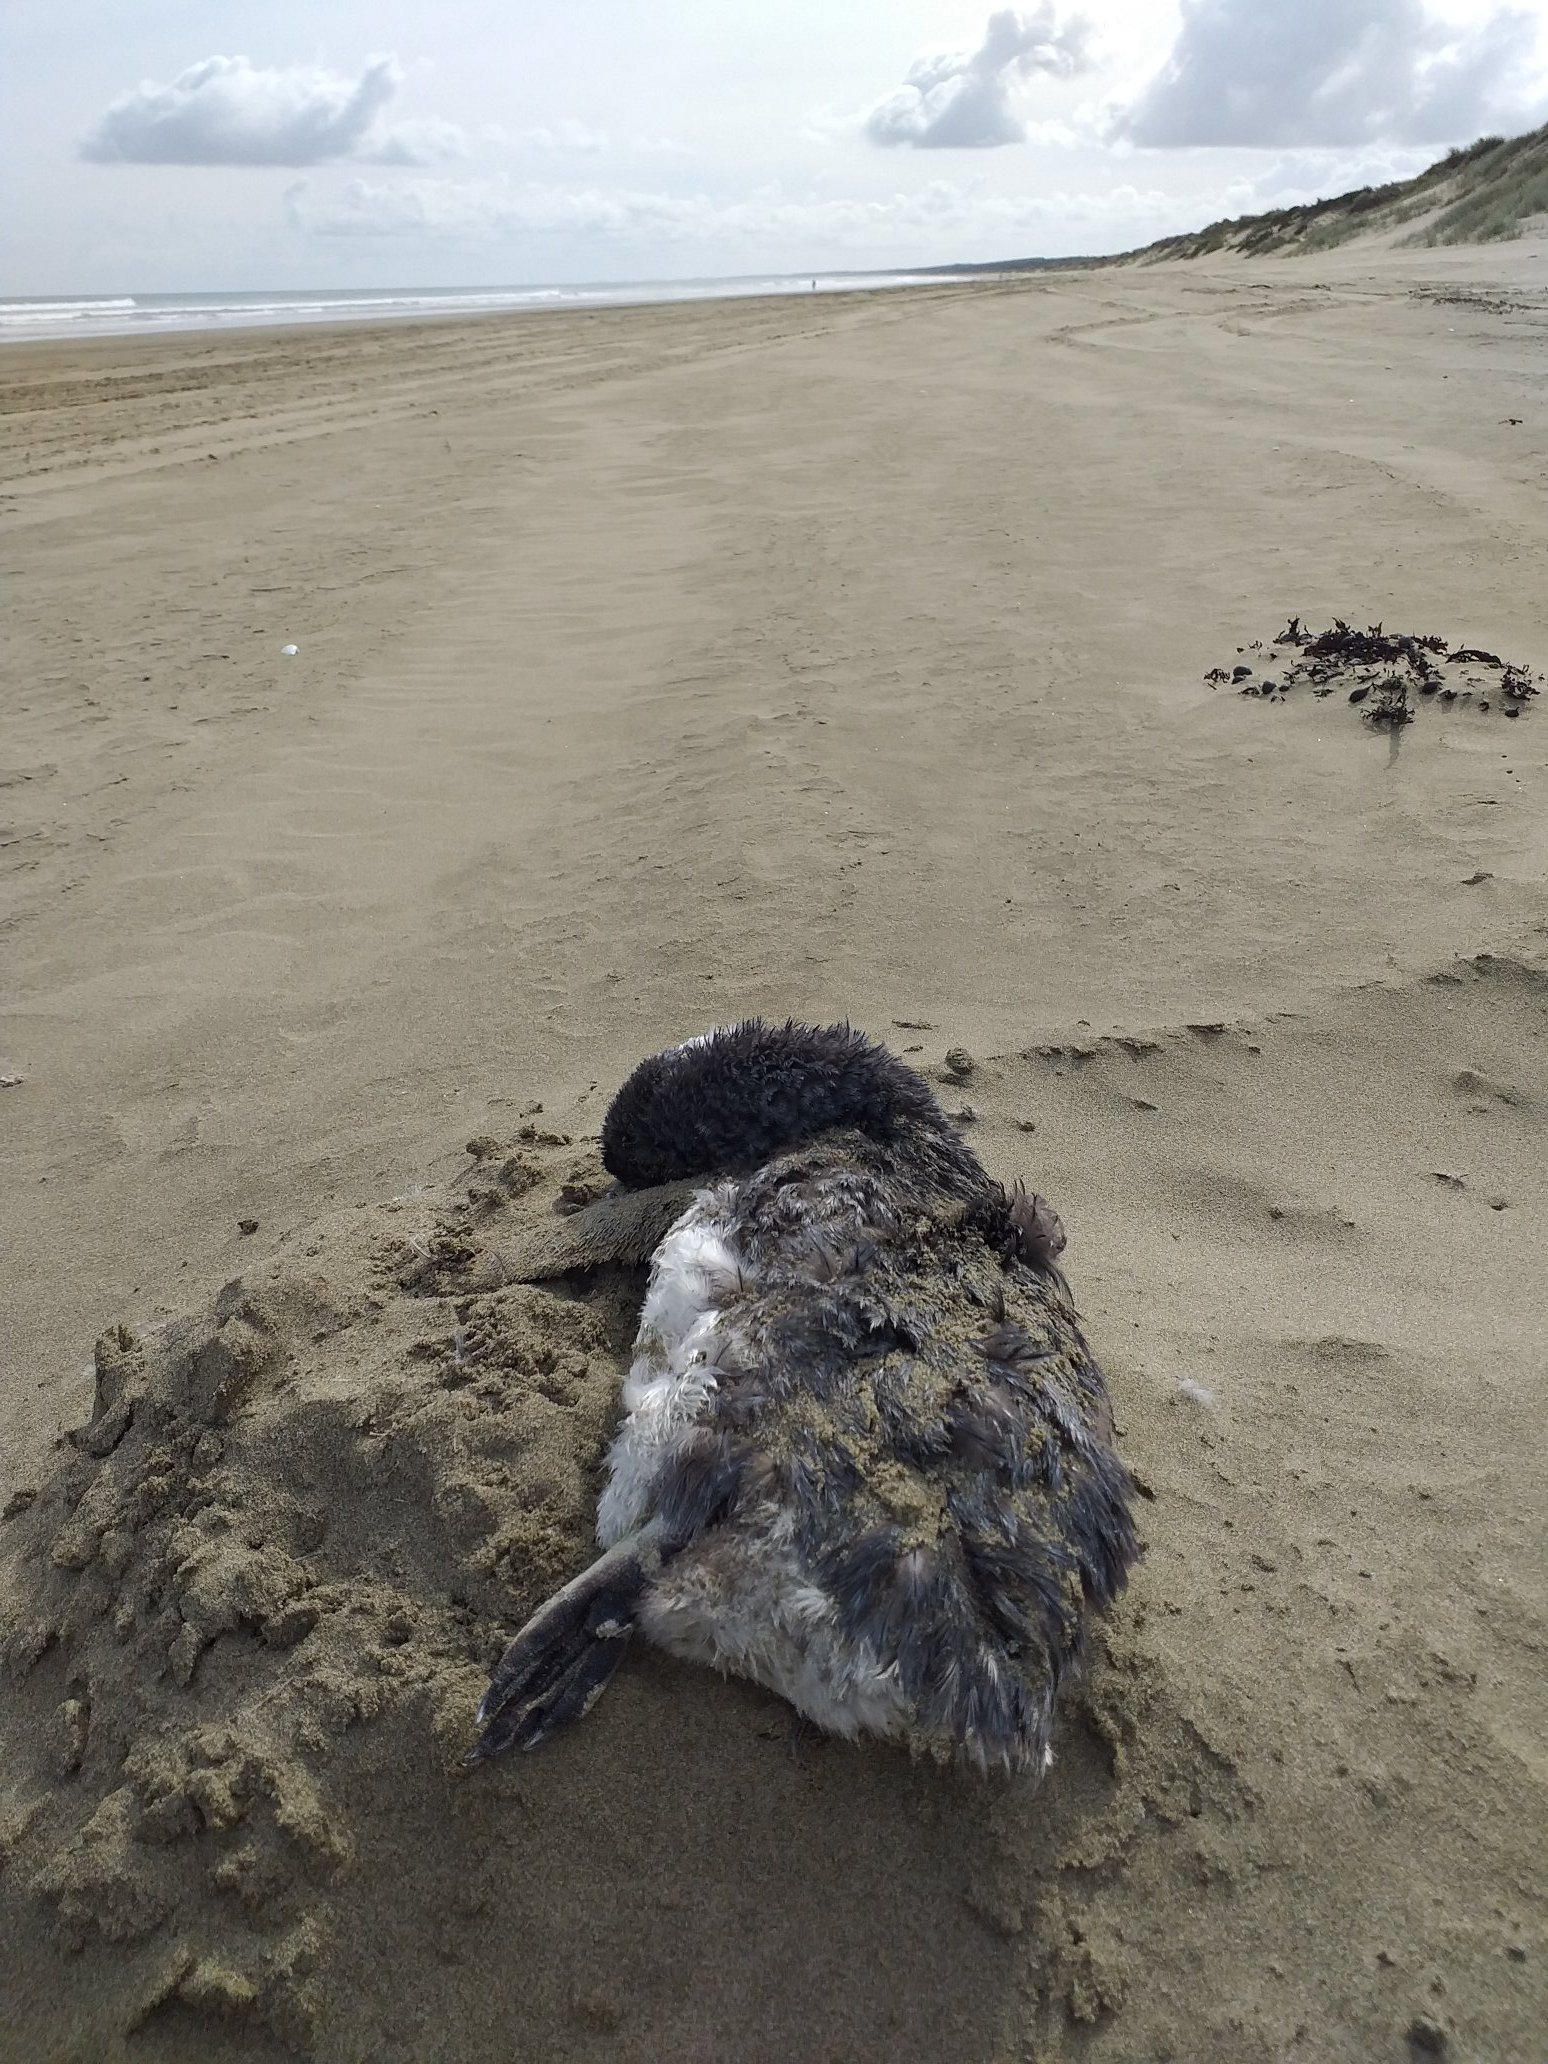 Los locales suelen encontrar decenas y hasta cientos de pingüinos azules muertos en las playas.